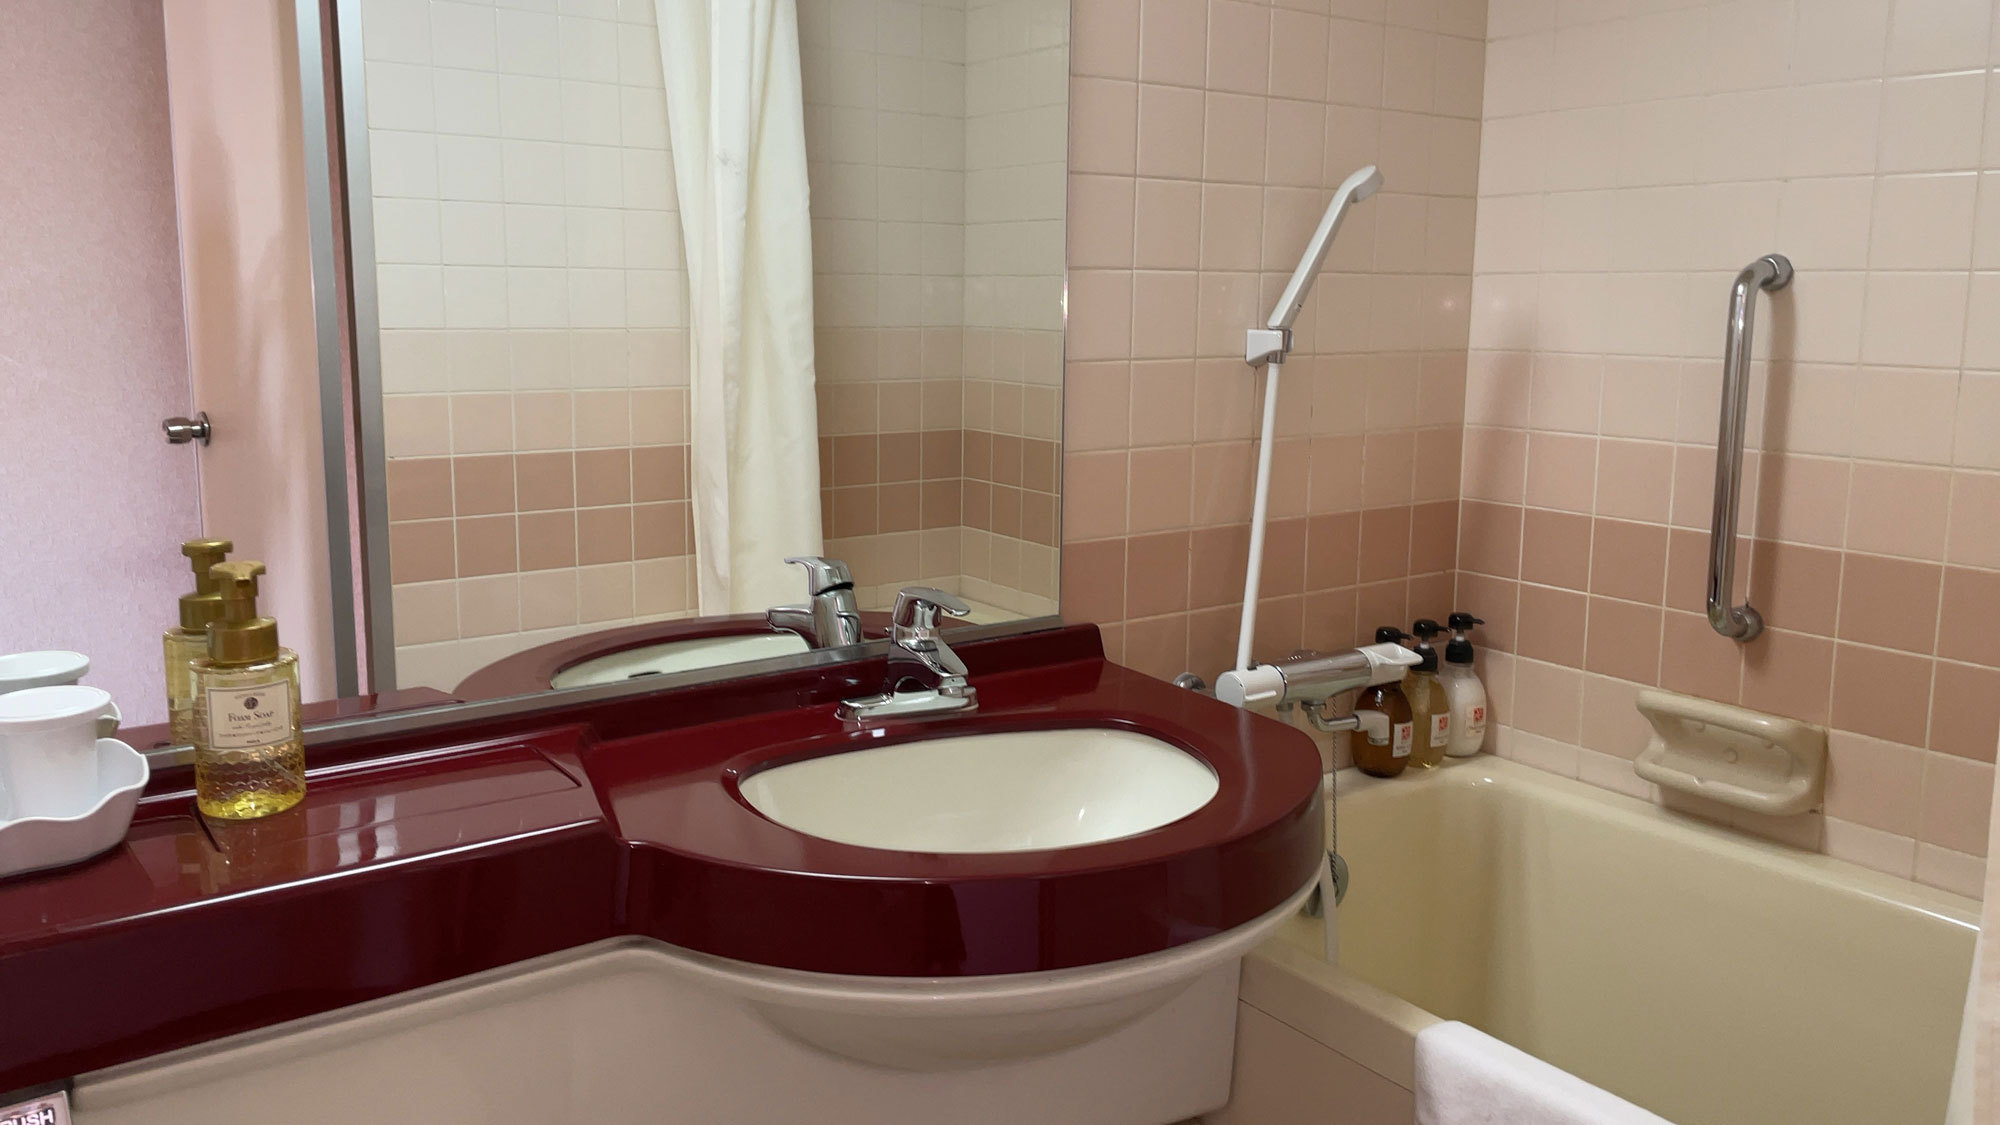 【セミダブル・バスルーム一例】バス・洗面台・トイレがひとつになったコンパクトな空間